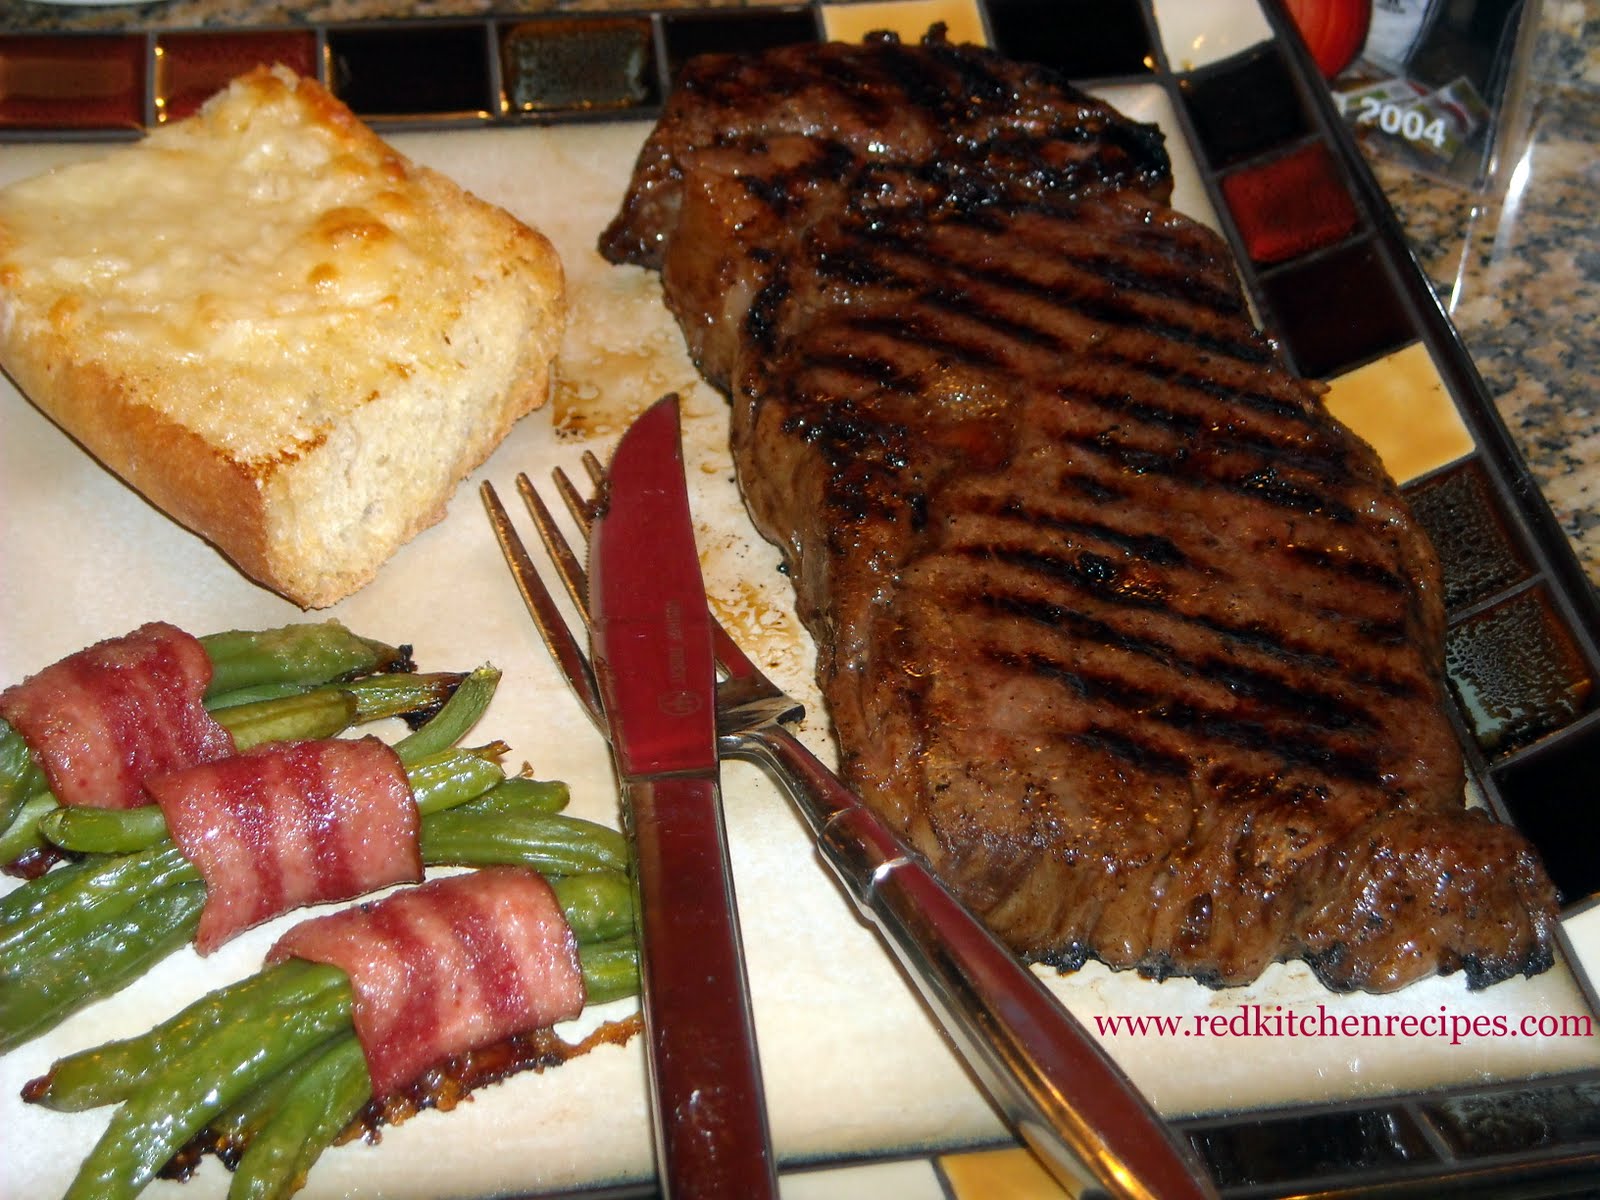 Red Kitchen Recipes: Wagyu Steak